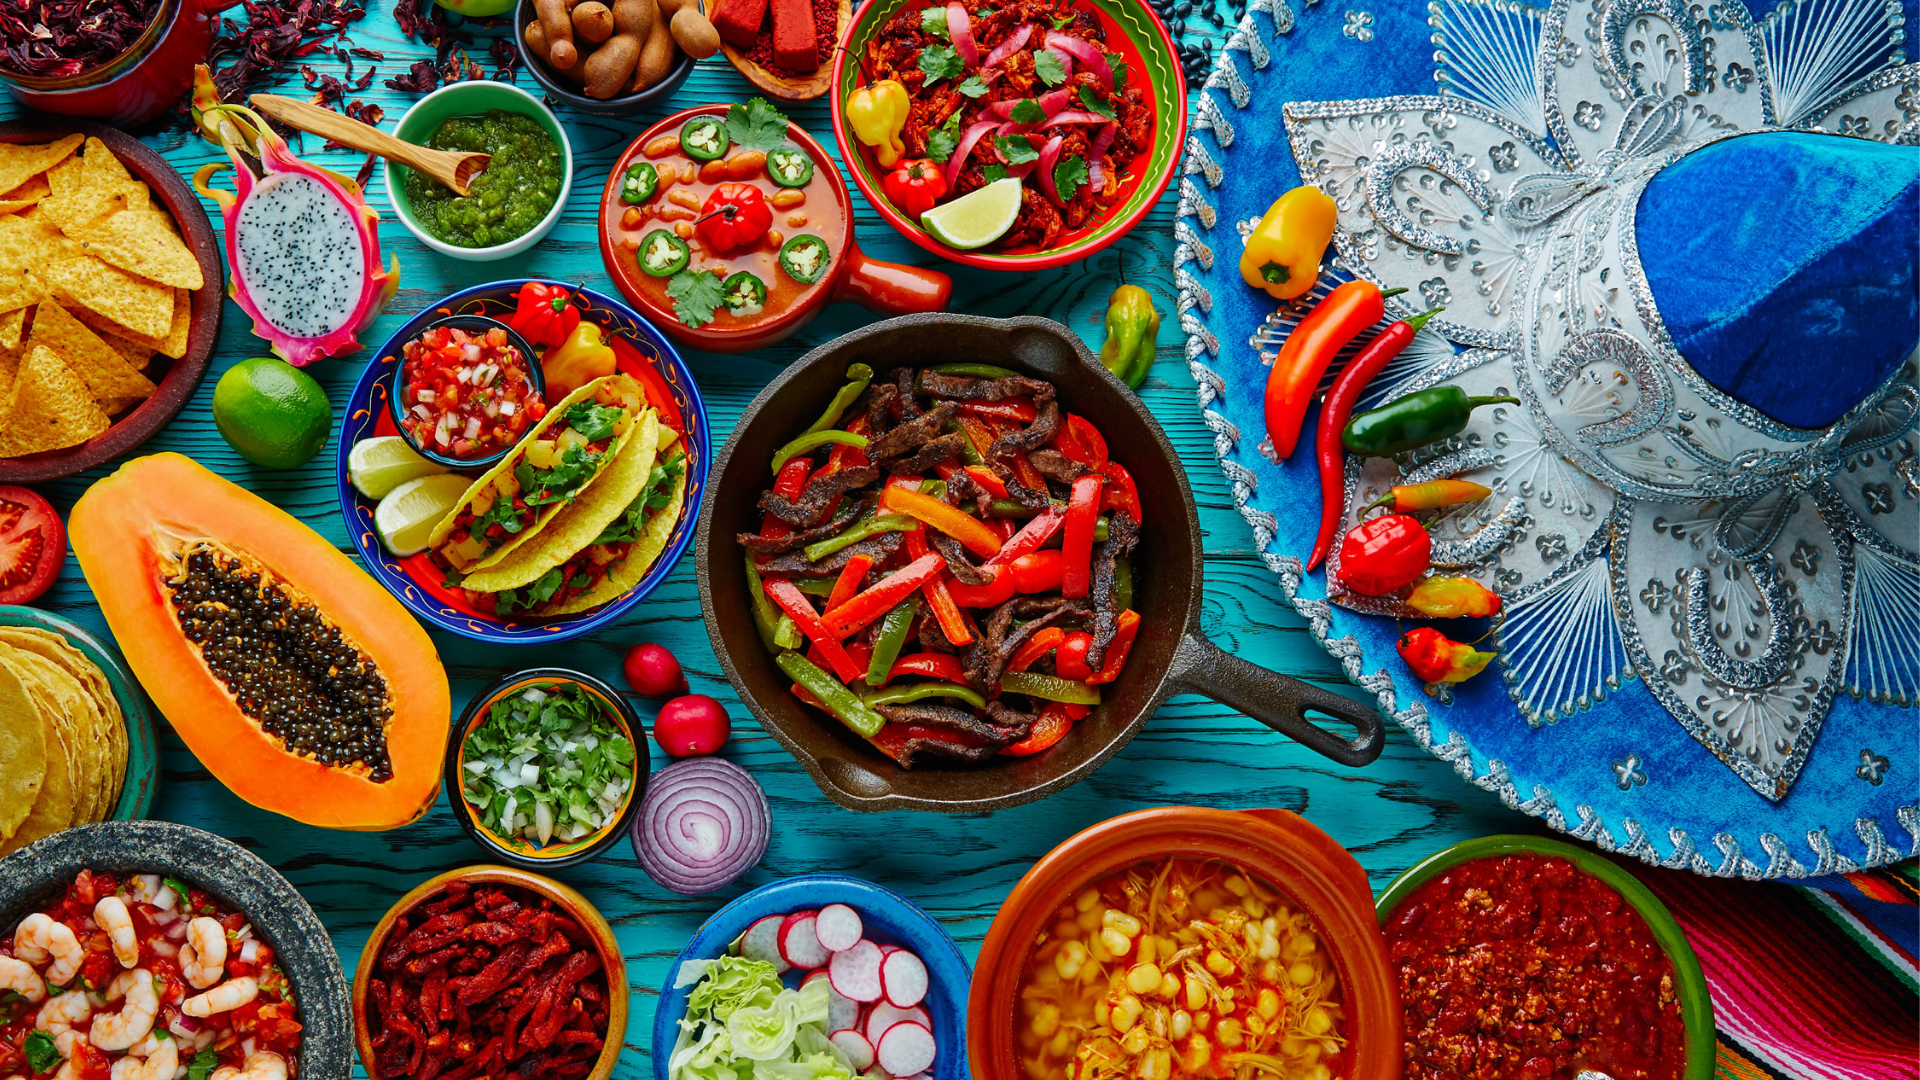 Gastronomía Mexicana, deliciosa, nutritiva, saludable y económica.